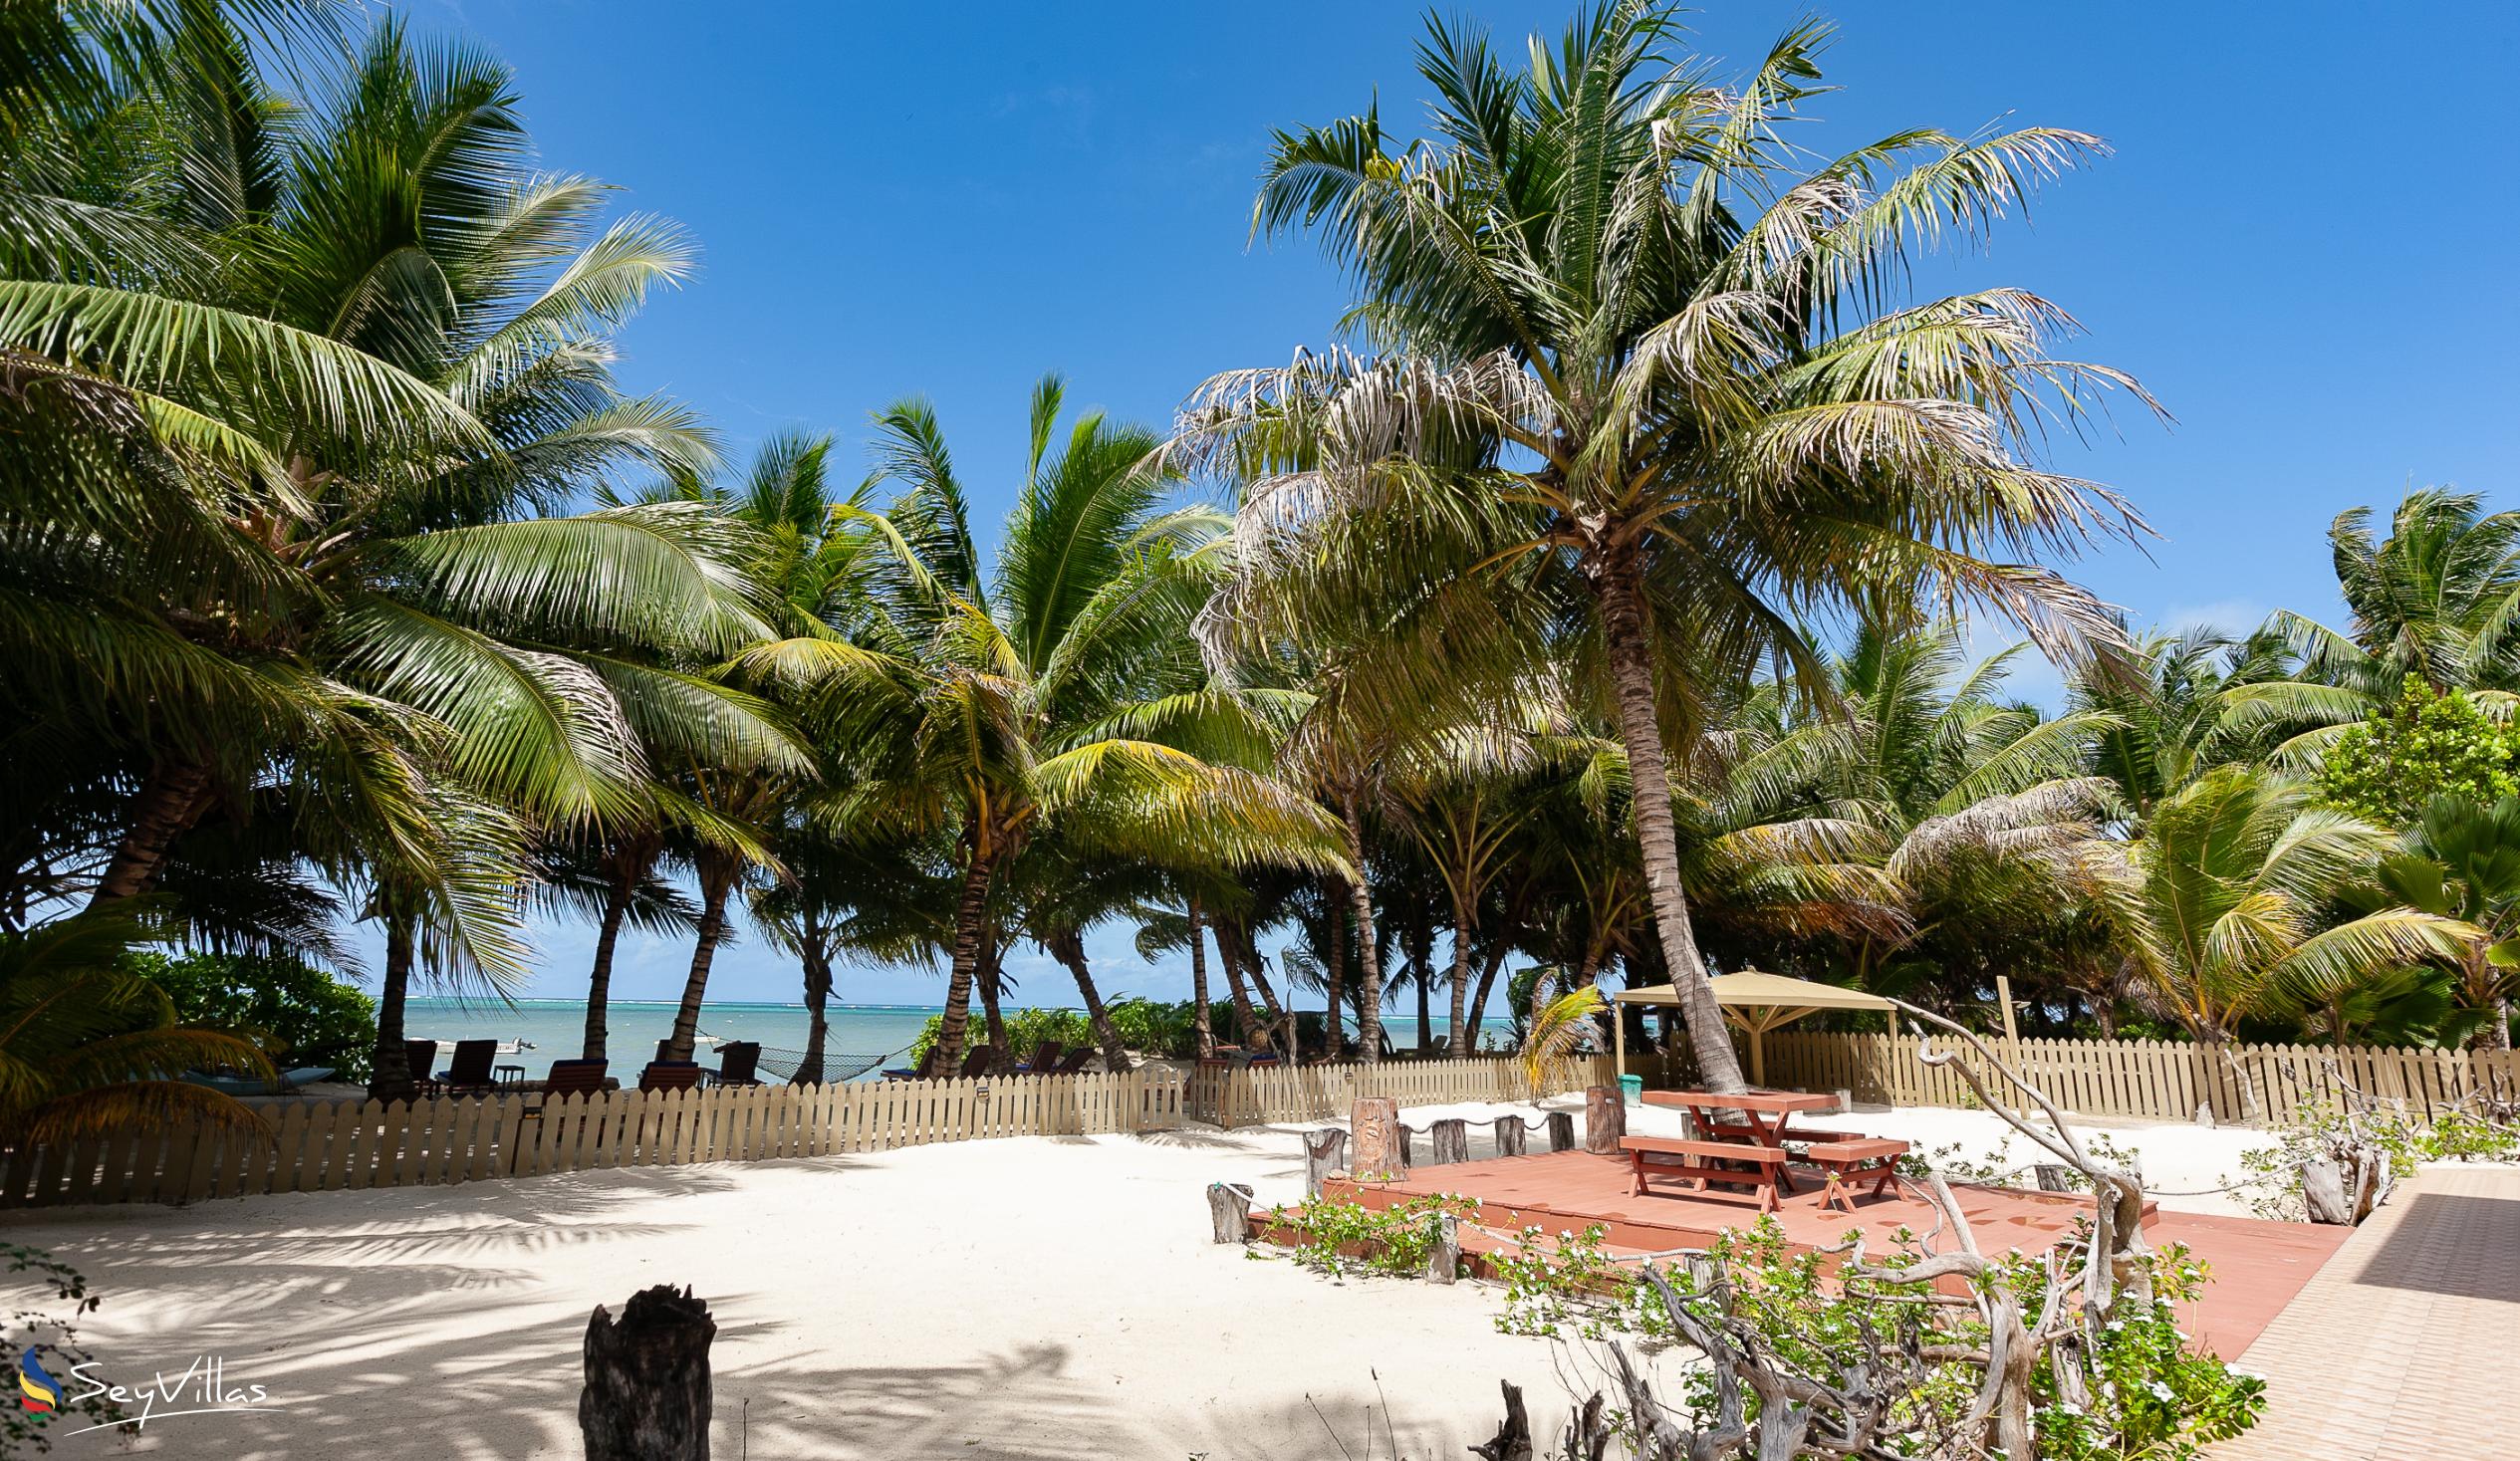 Foto 8: Seashell Beach Villa - Aussenbereich - Praslin (Seychellen)